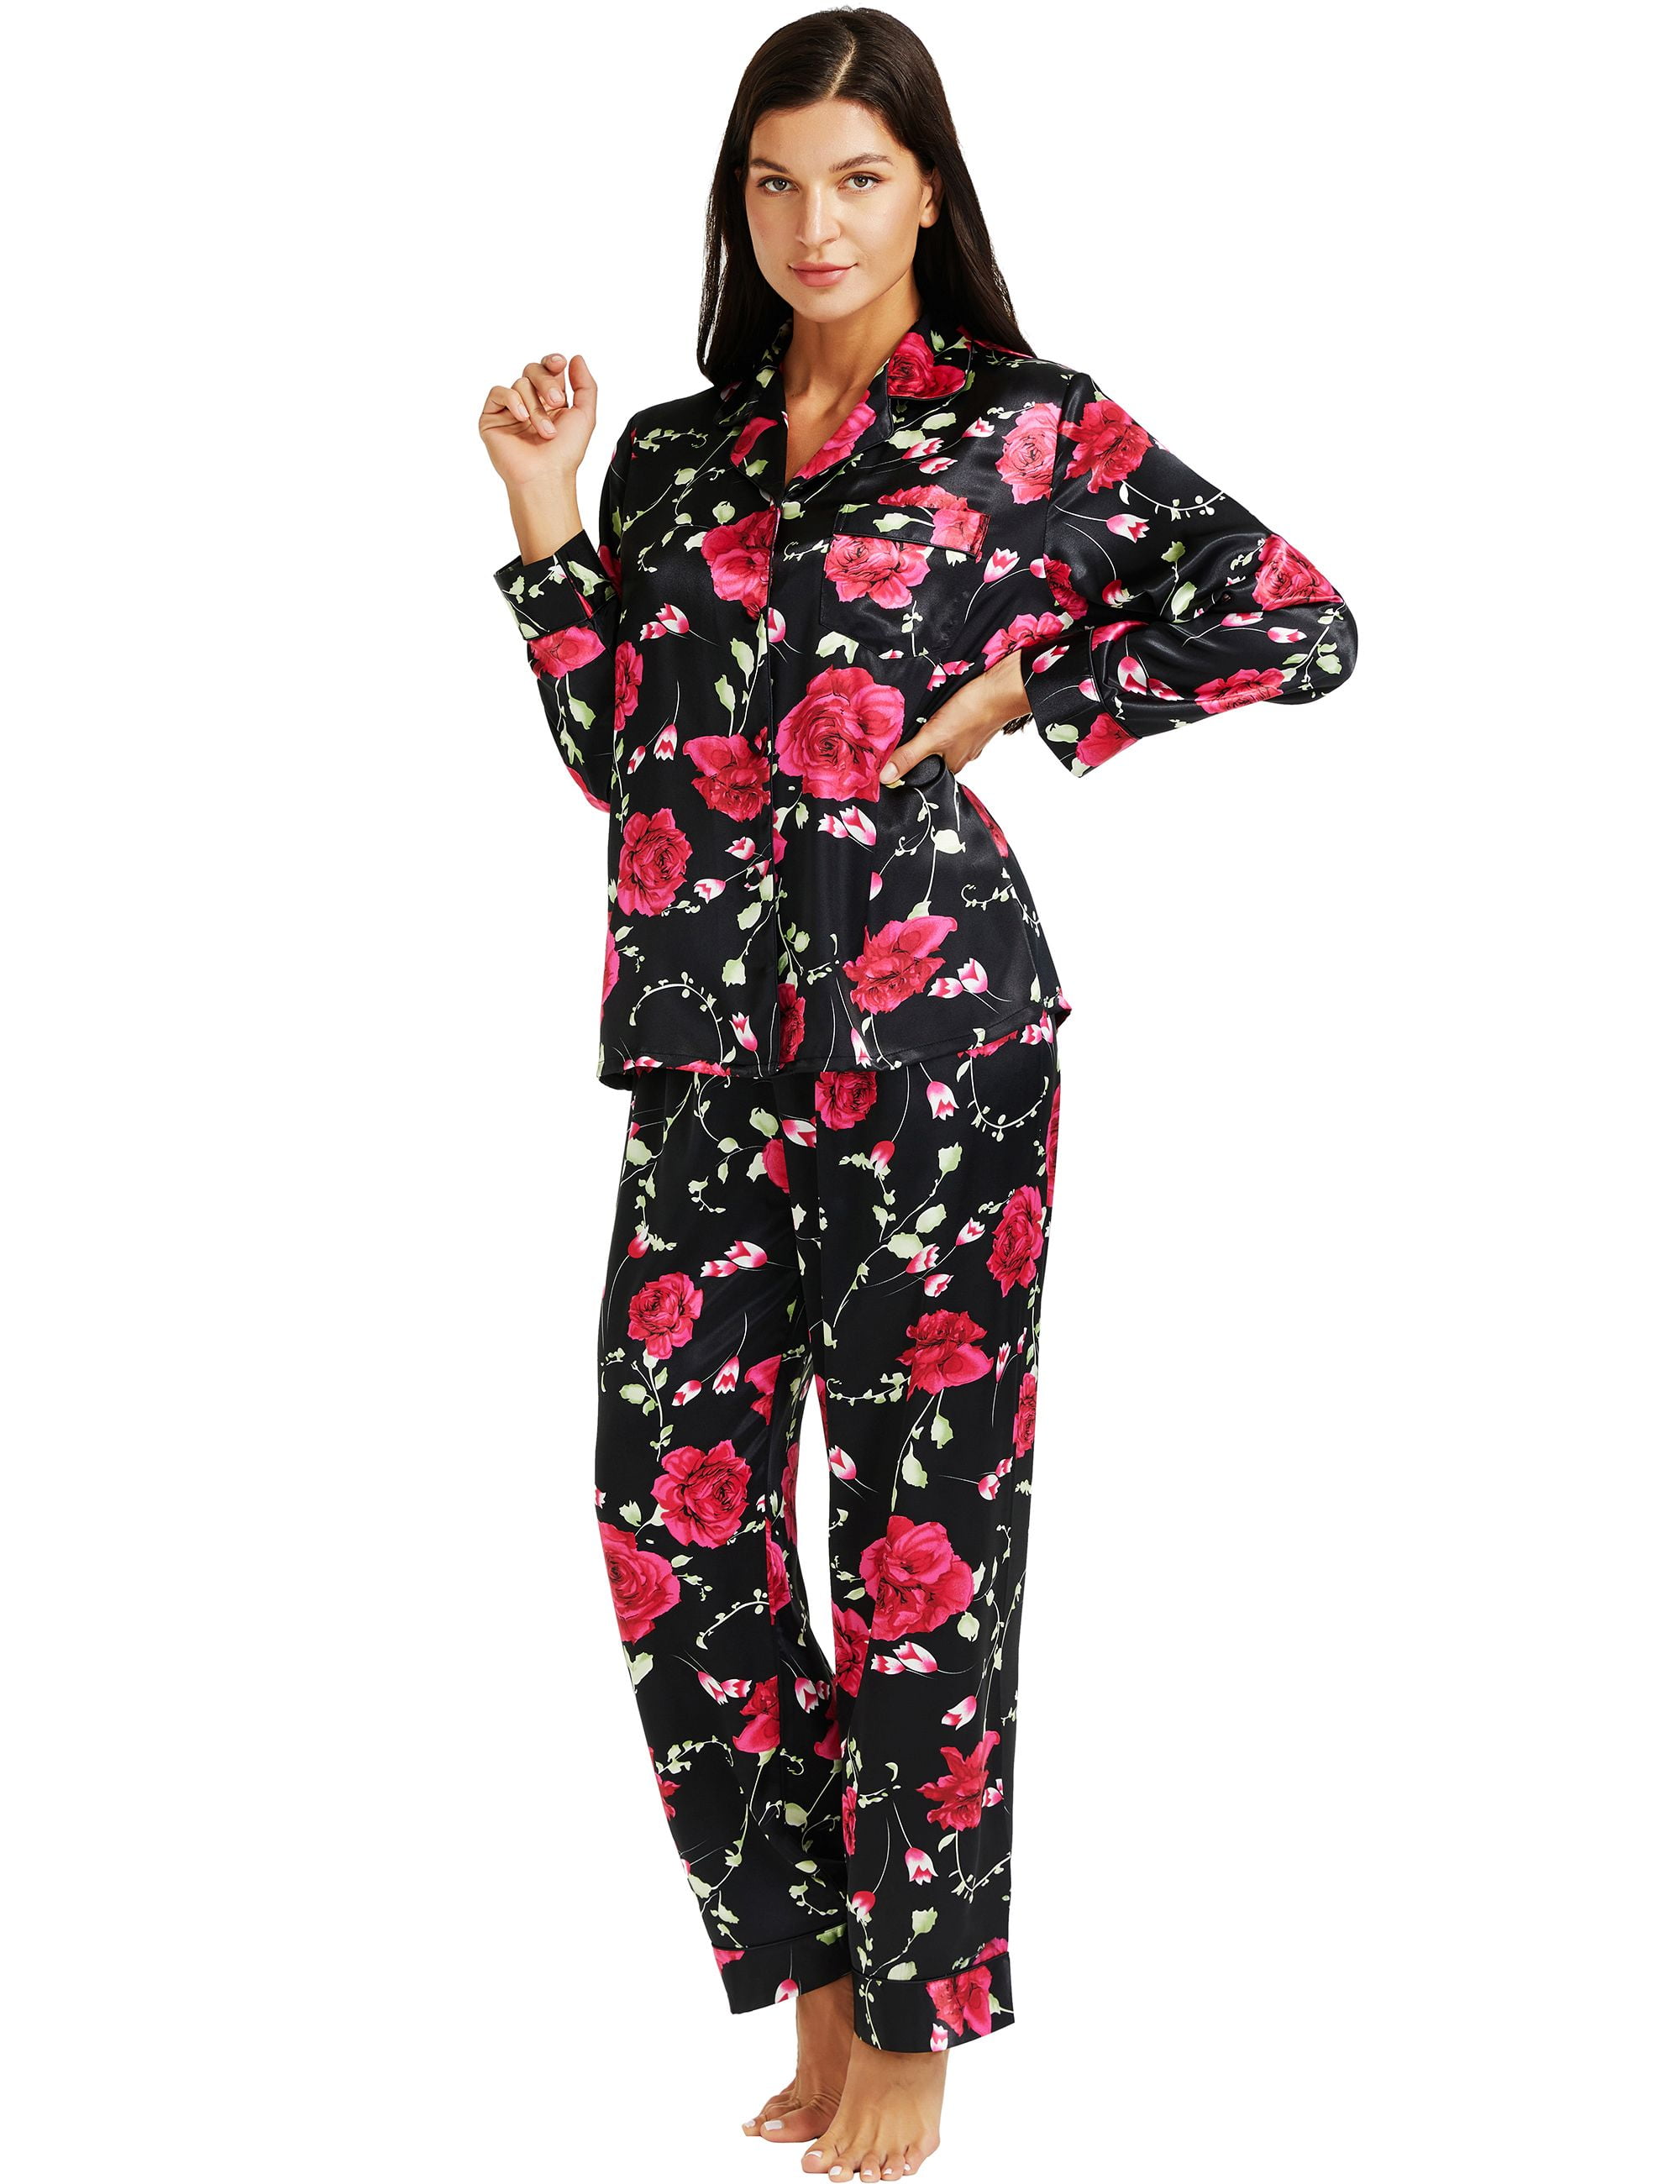 LONXU Women's Sleepwear Silk Satin Luxury Nightwear Sets XS-XXXL ...